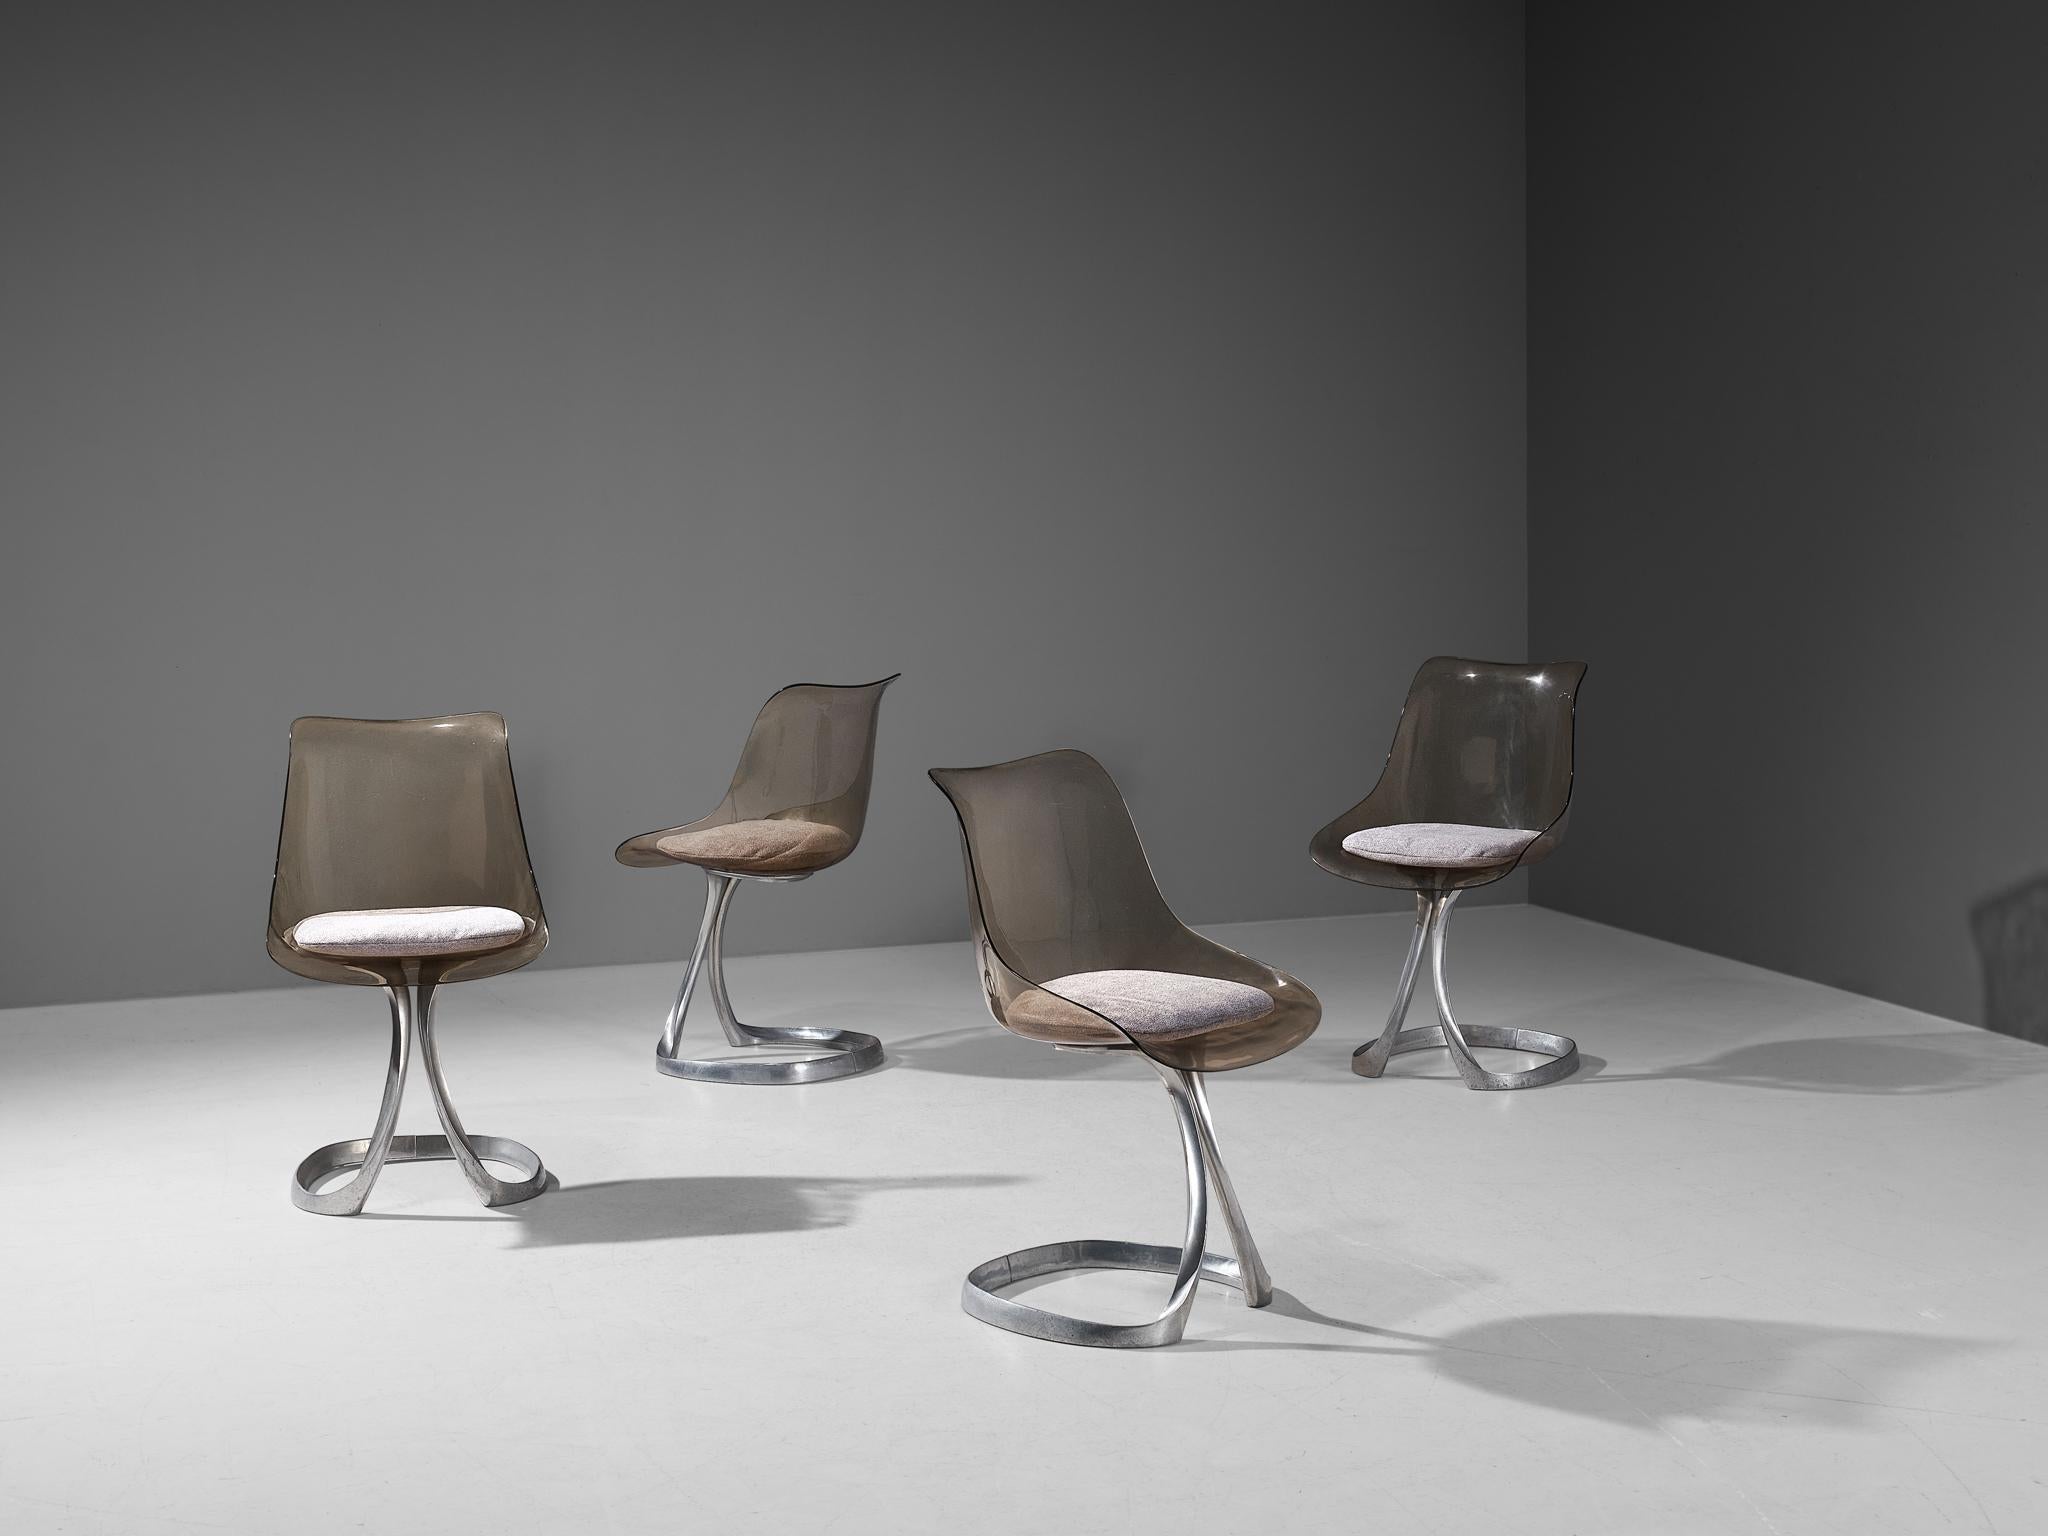 Michel Charron, chaises de salle à manger, plexiglas, aluminium, tissu, France, années 1970

Ces chaises de salle à manger de forme organique ont été conçues par le designer français Michel Charron. Chaque chaise est composée d'une coque en verre